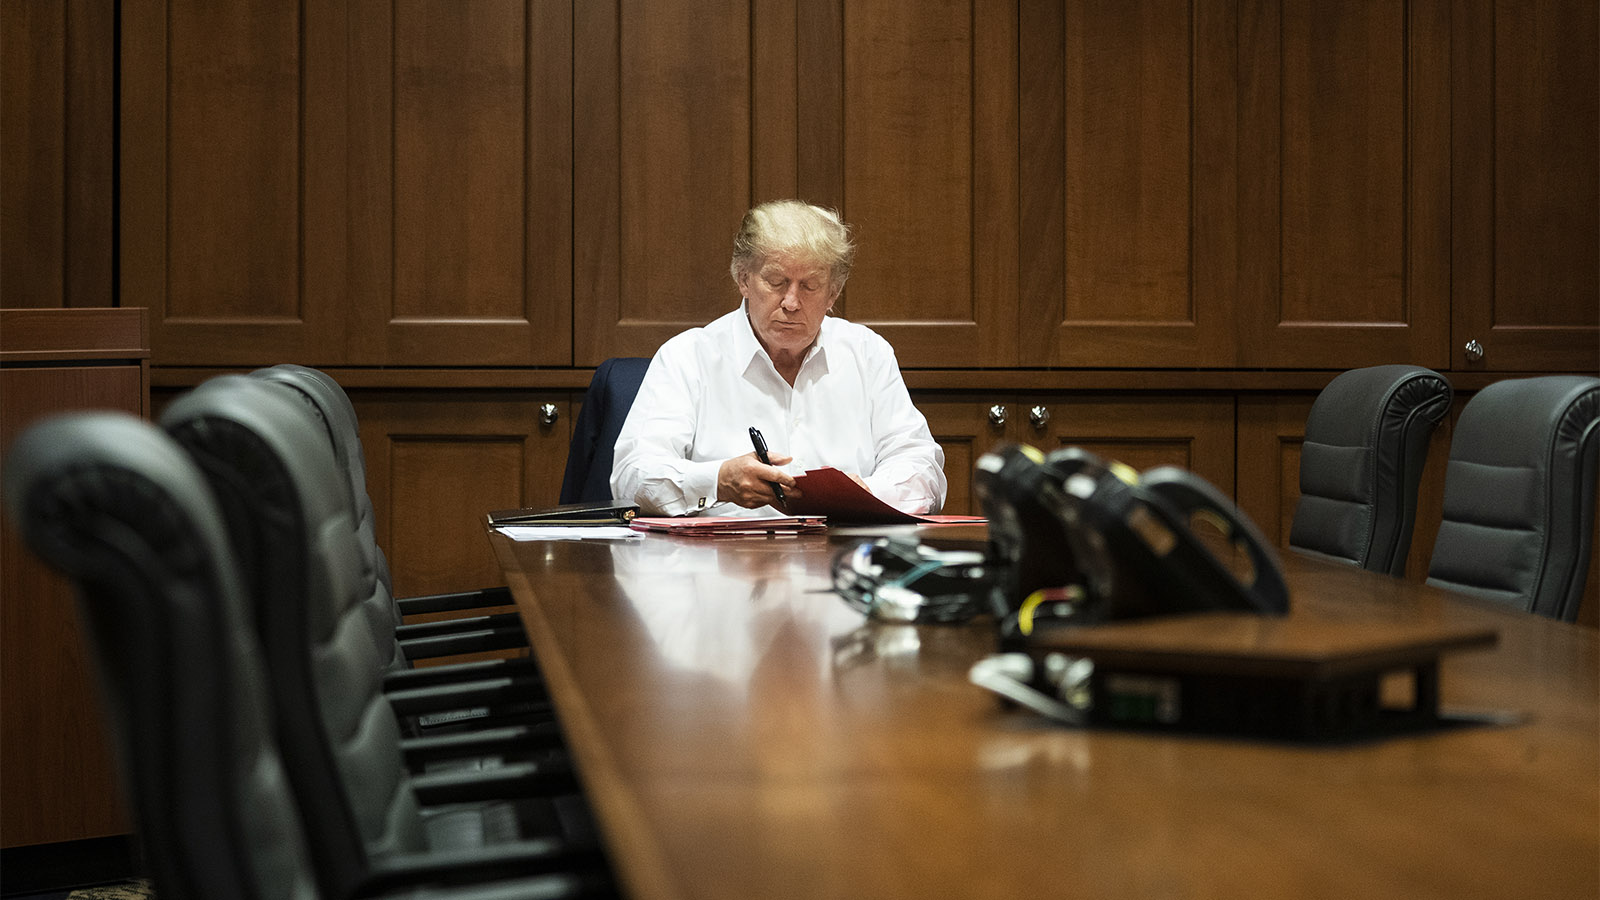 הנשיא דונאלד טראמפ עובד מבית החולים וולטר ריד בו הוא מאושפז. (צילום: Joyce N. Boghosian/The White House via AP)